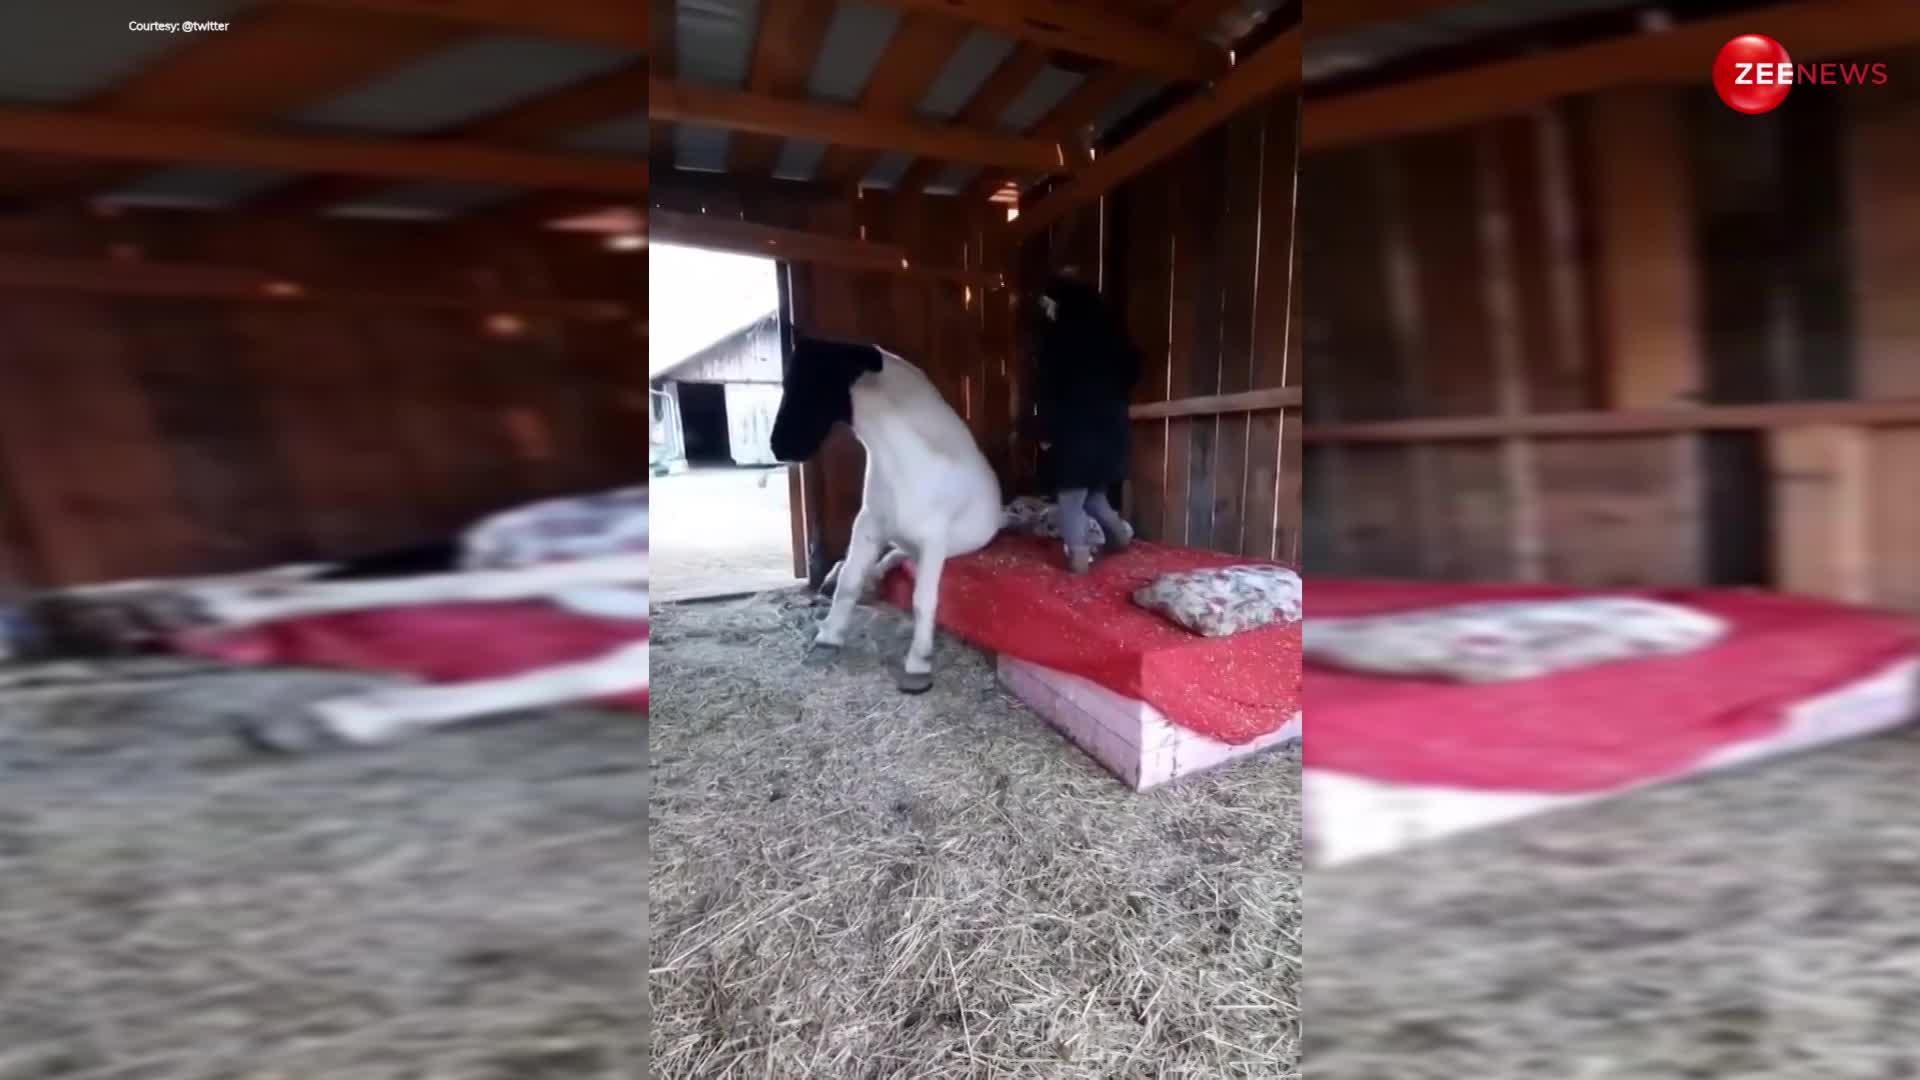 लोरी सुनाकर चादर ओढ़ाकर बेड पर घोड़े को सुलाने लगी लड़की, वीडियो देख लोग बोले- सो क्यूट